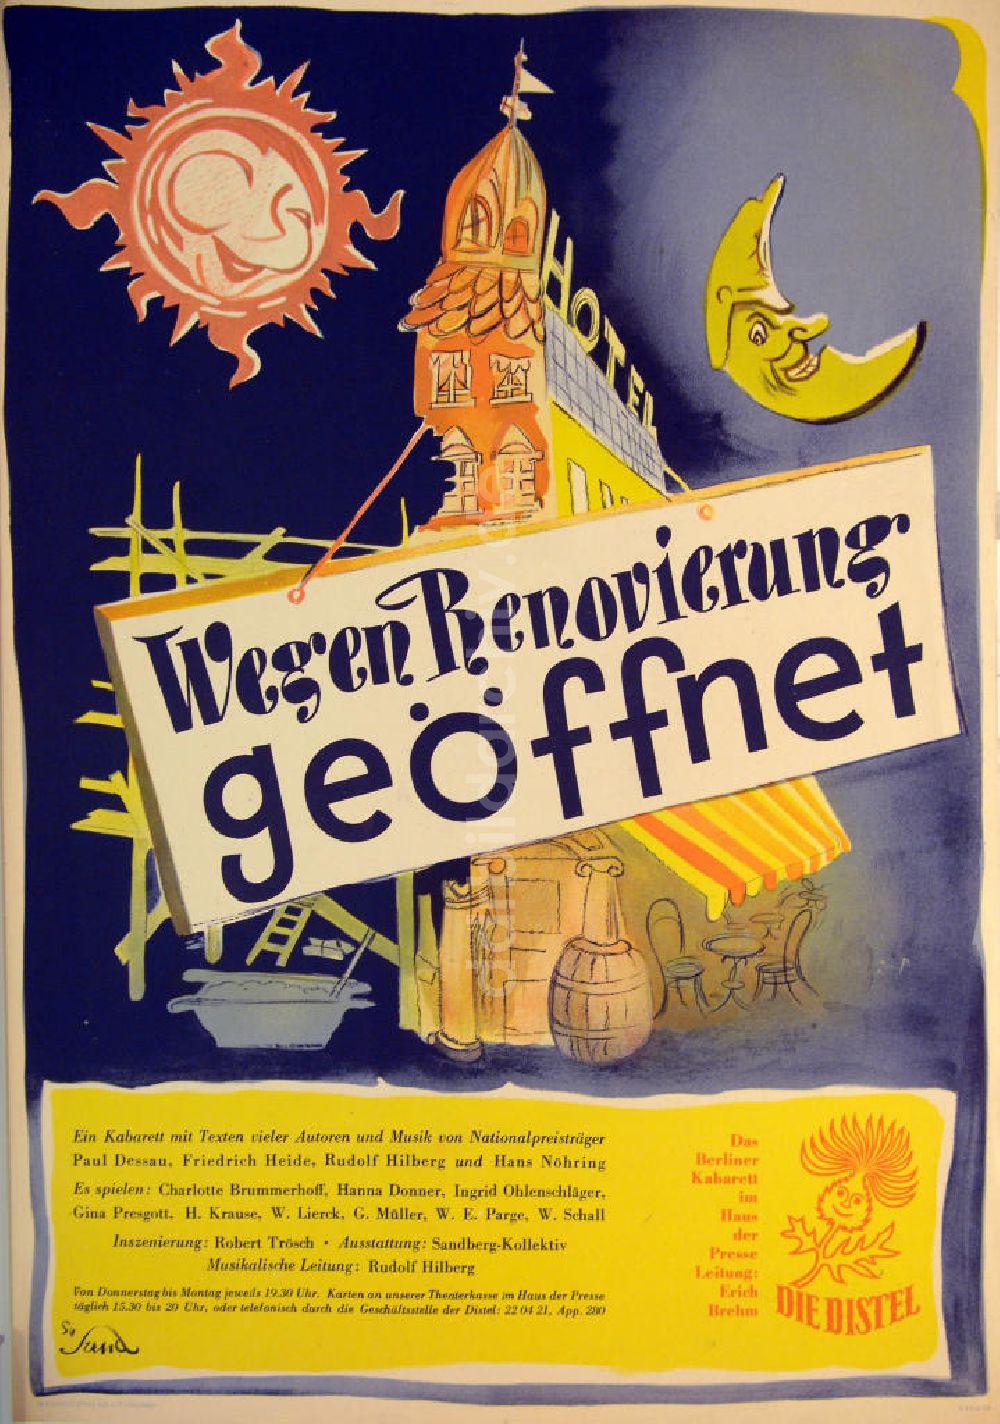 DDR-Bildarchiv: Berlin - Plakat von Herbert Sandberg Wegen Renovierung geöffnet aus dem Jahr 1954